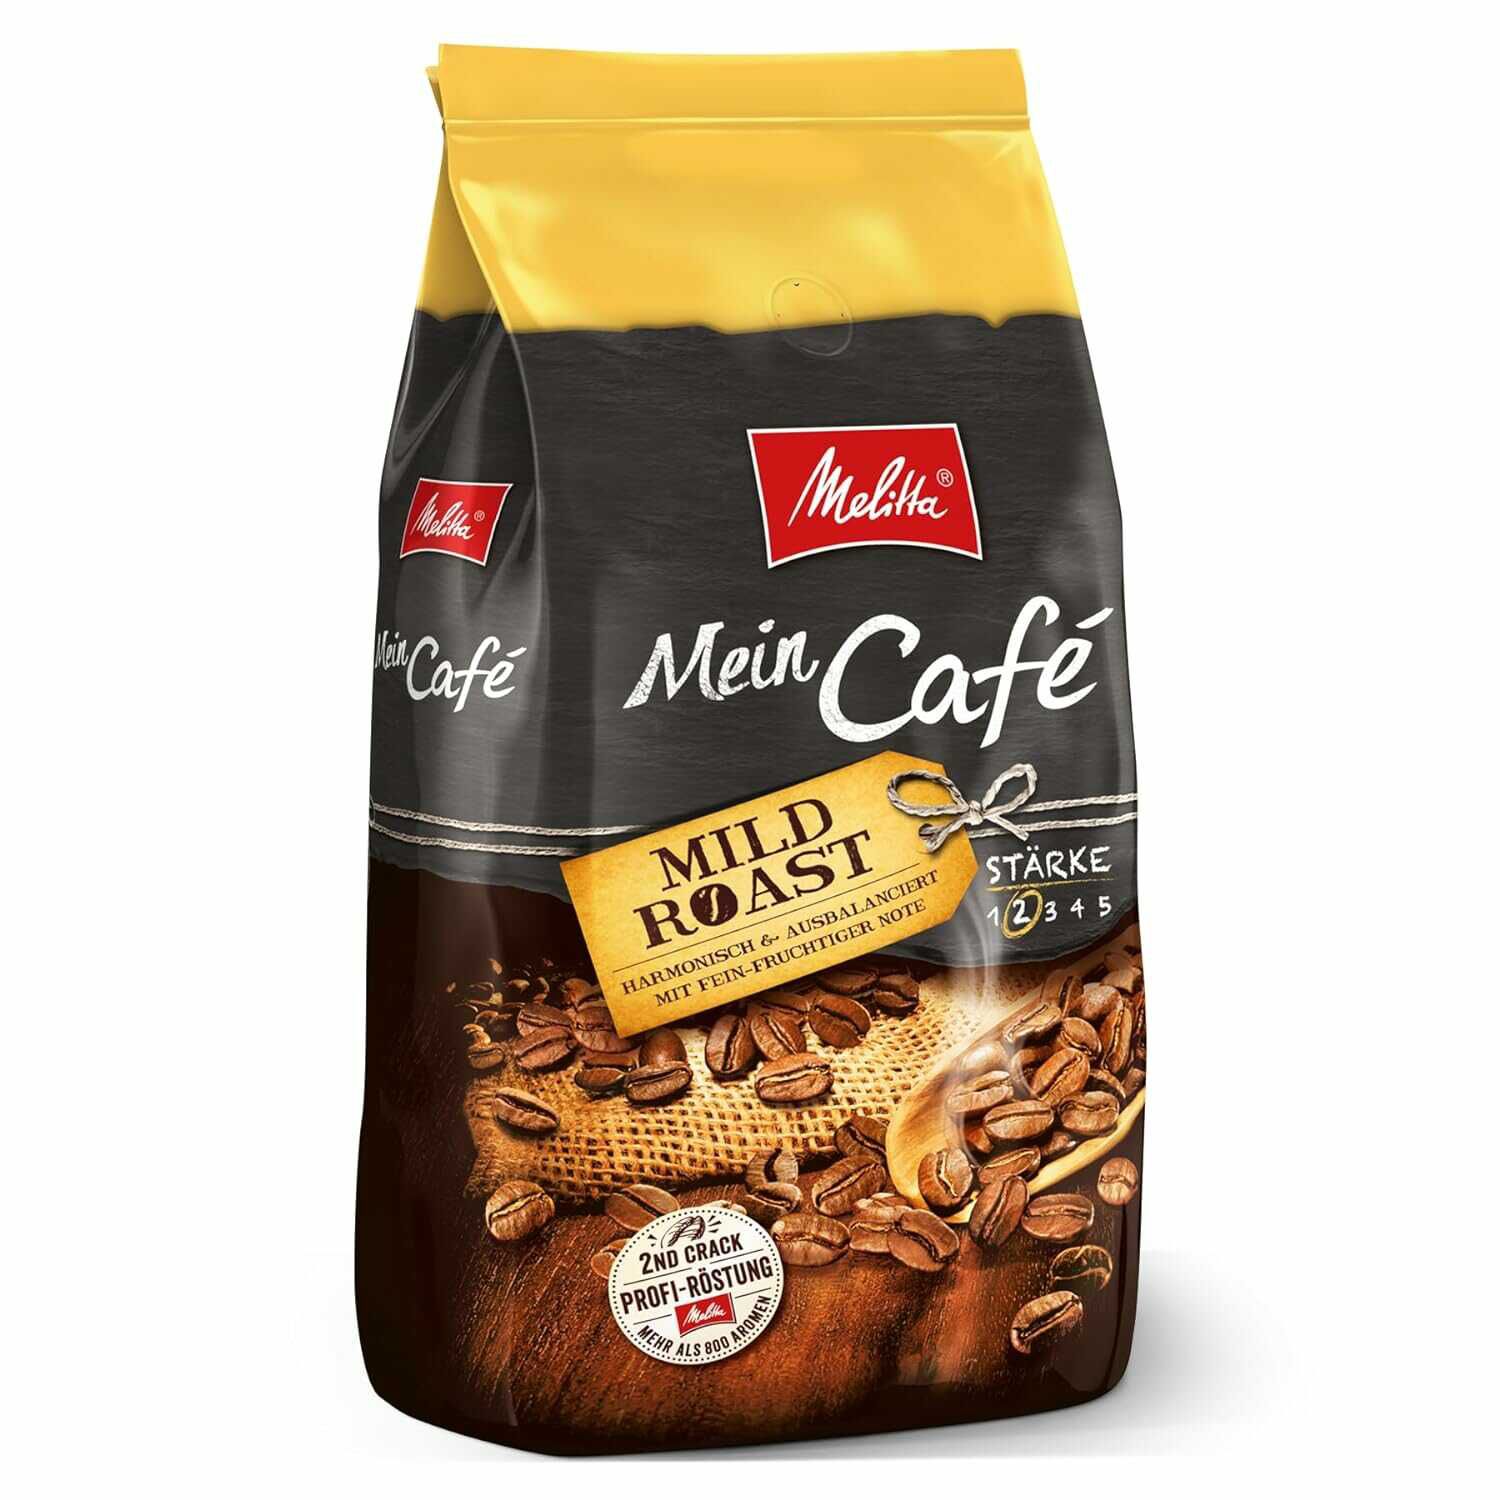 Melitta Mein Café Mild Roast 1kg für 12,14€ statt 20€